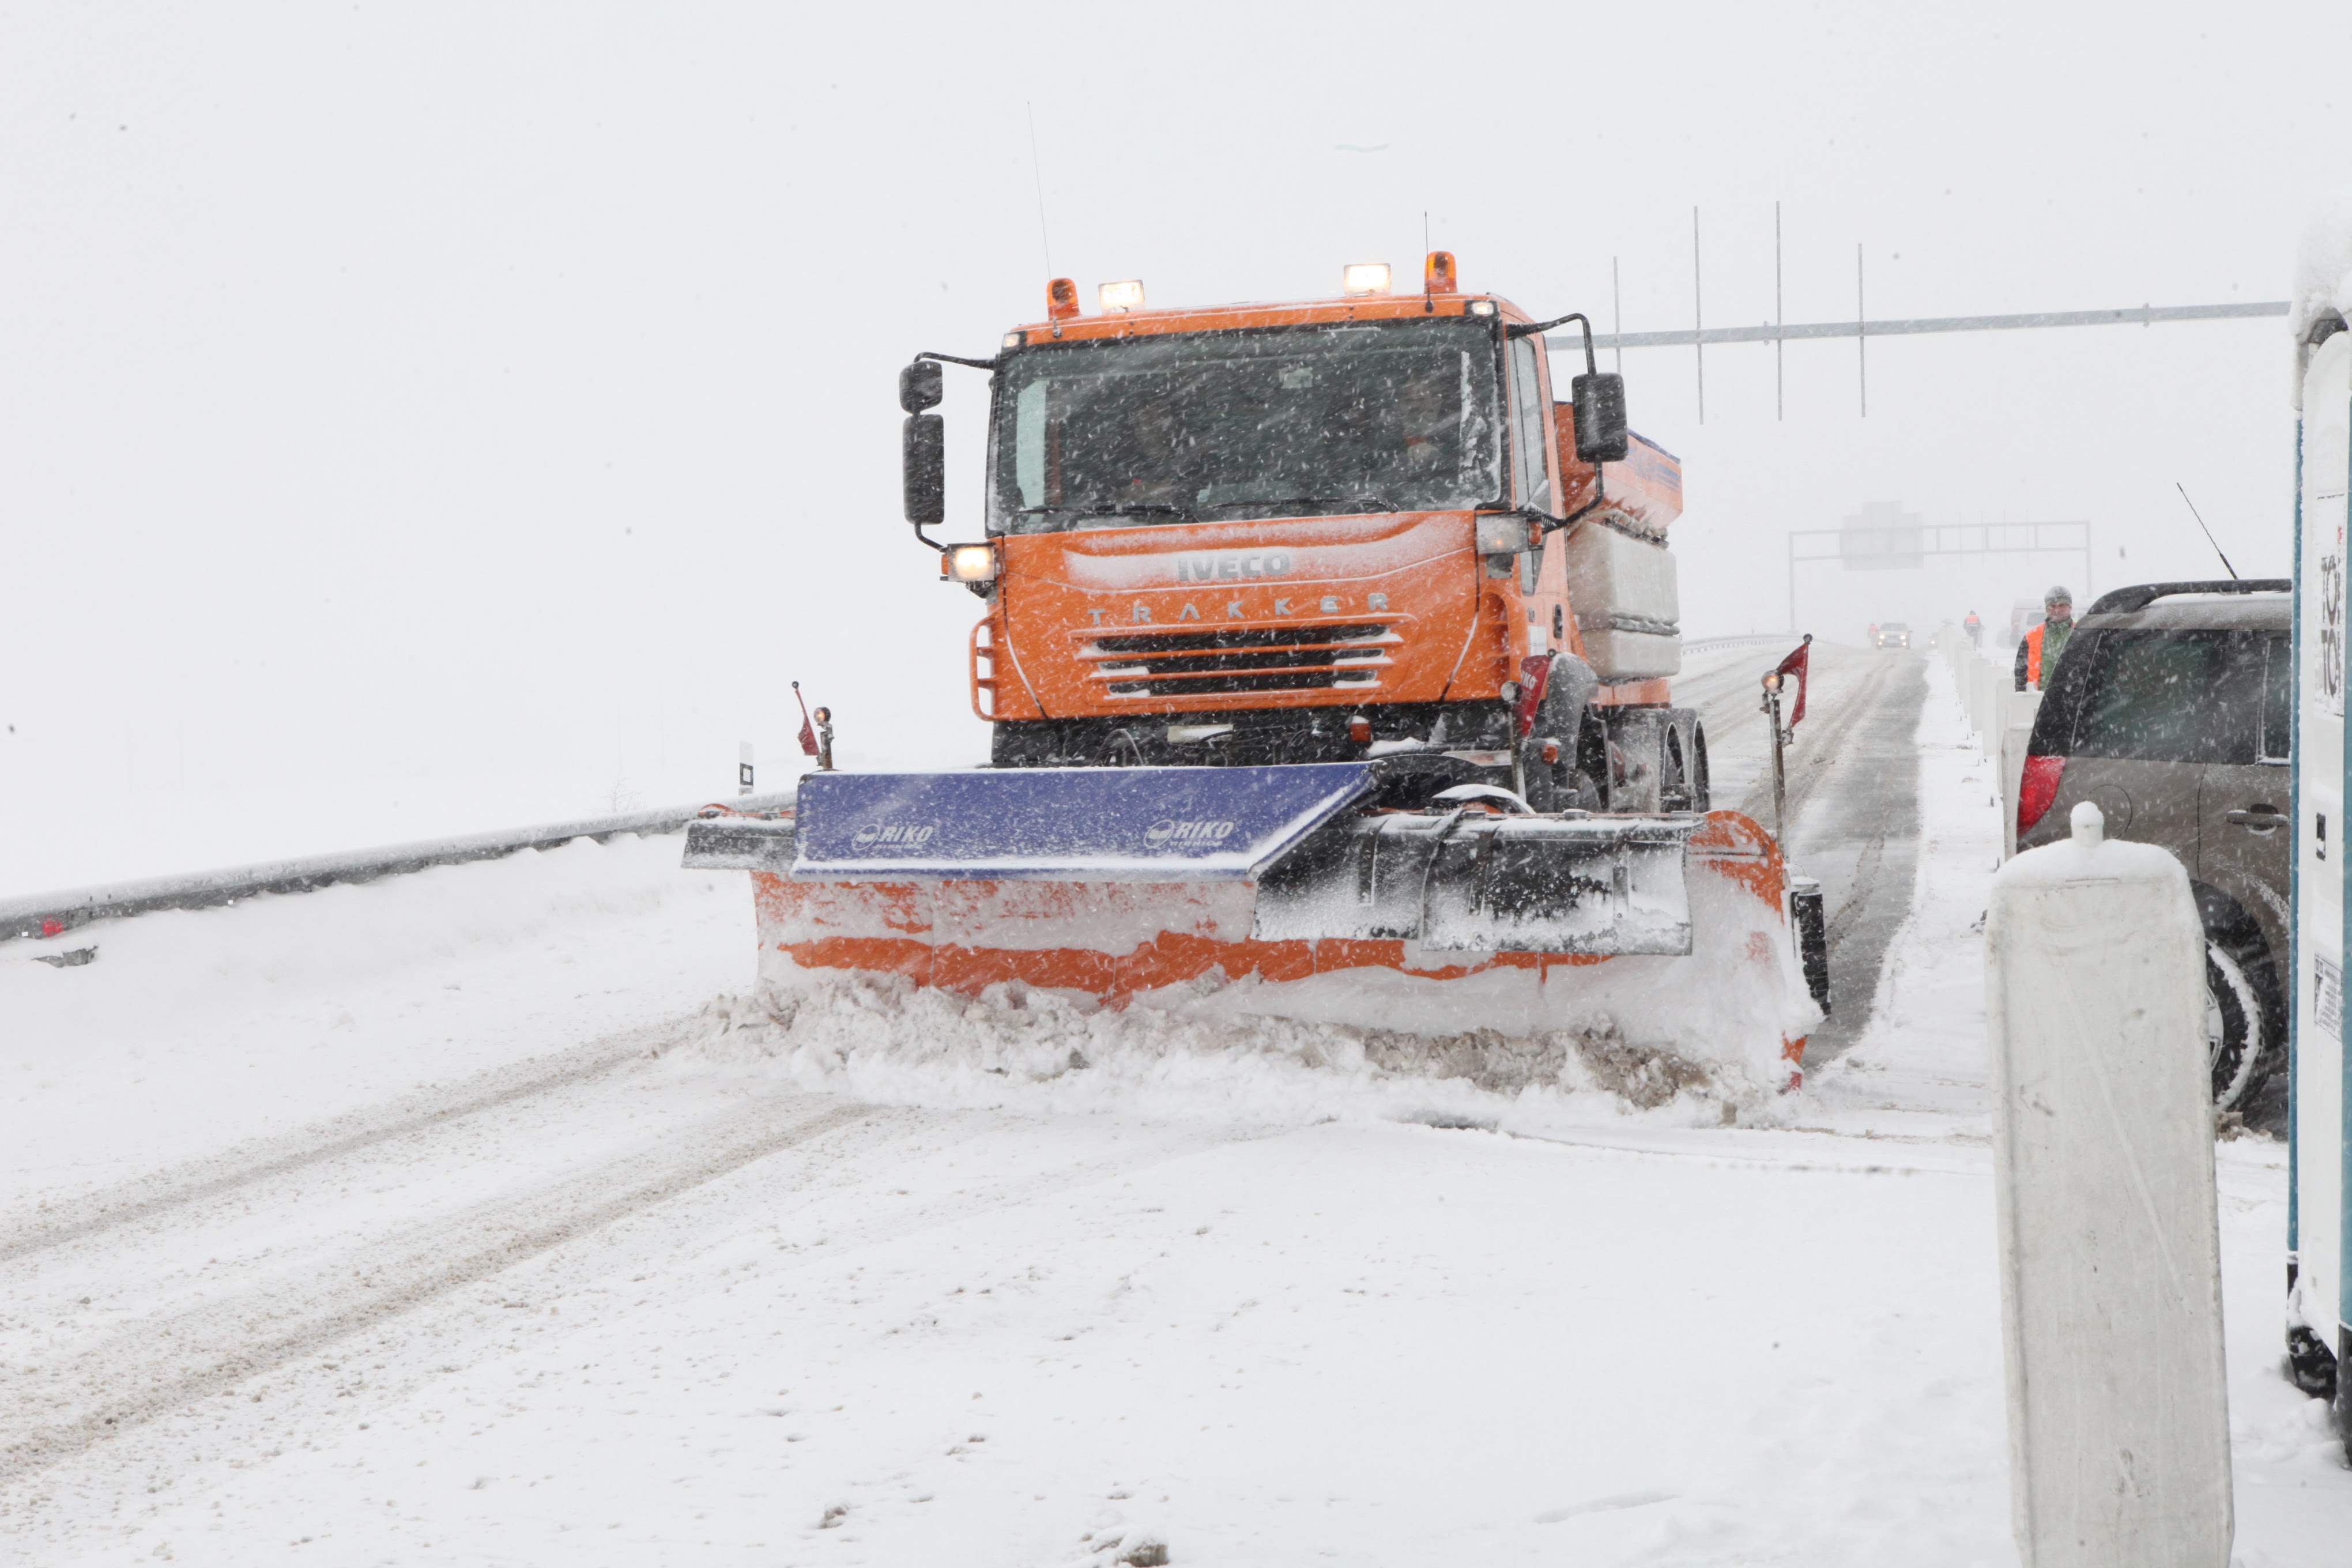 Ředitelství silnic a dálnic má připraveno na zimní údržbu 200 sypačů a 648 řidičů